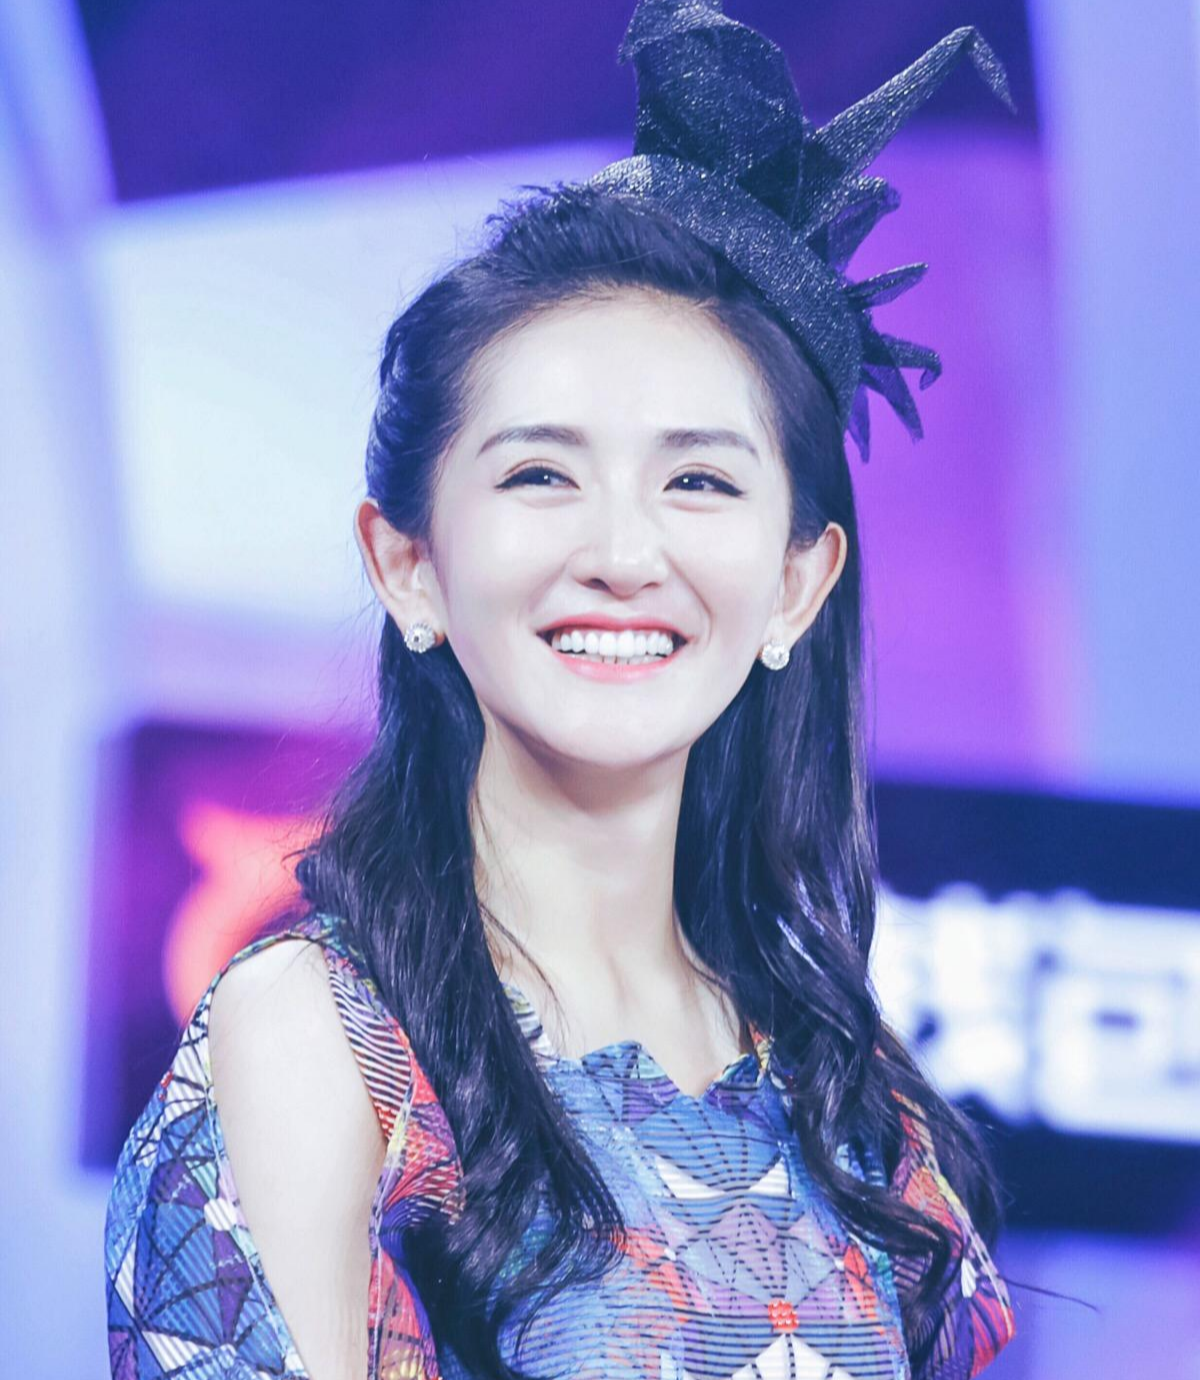 内地综艺天后 幸福快乐精灵——谢娜 高清大图 (22P) - 美女贴图 - 华声论坛